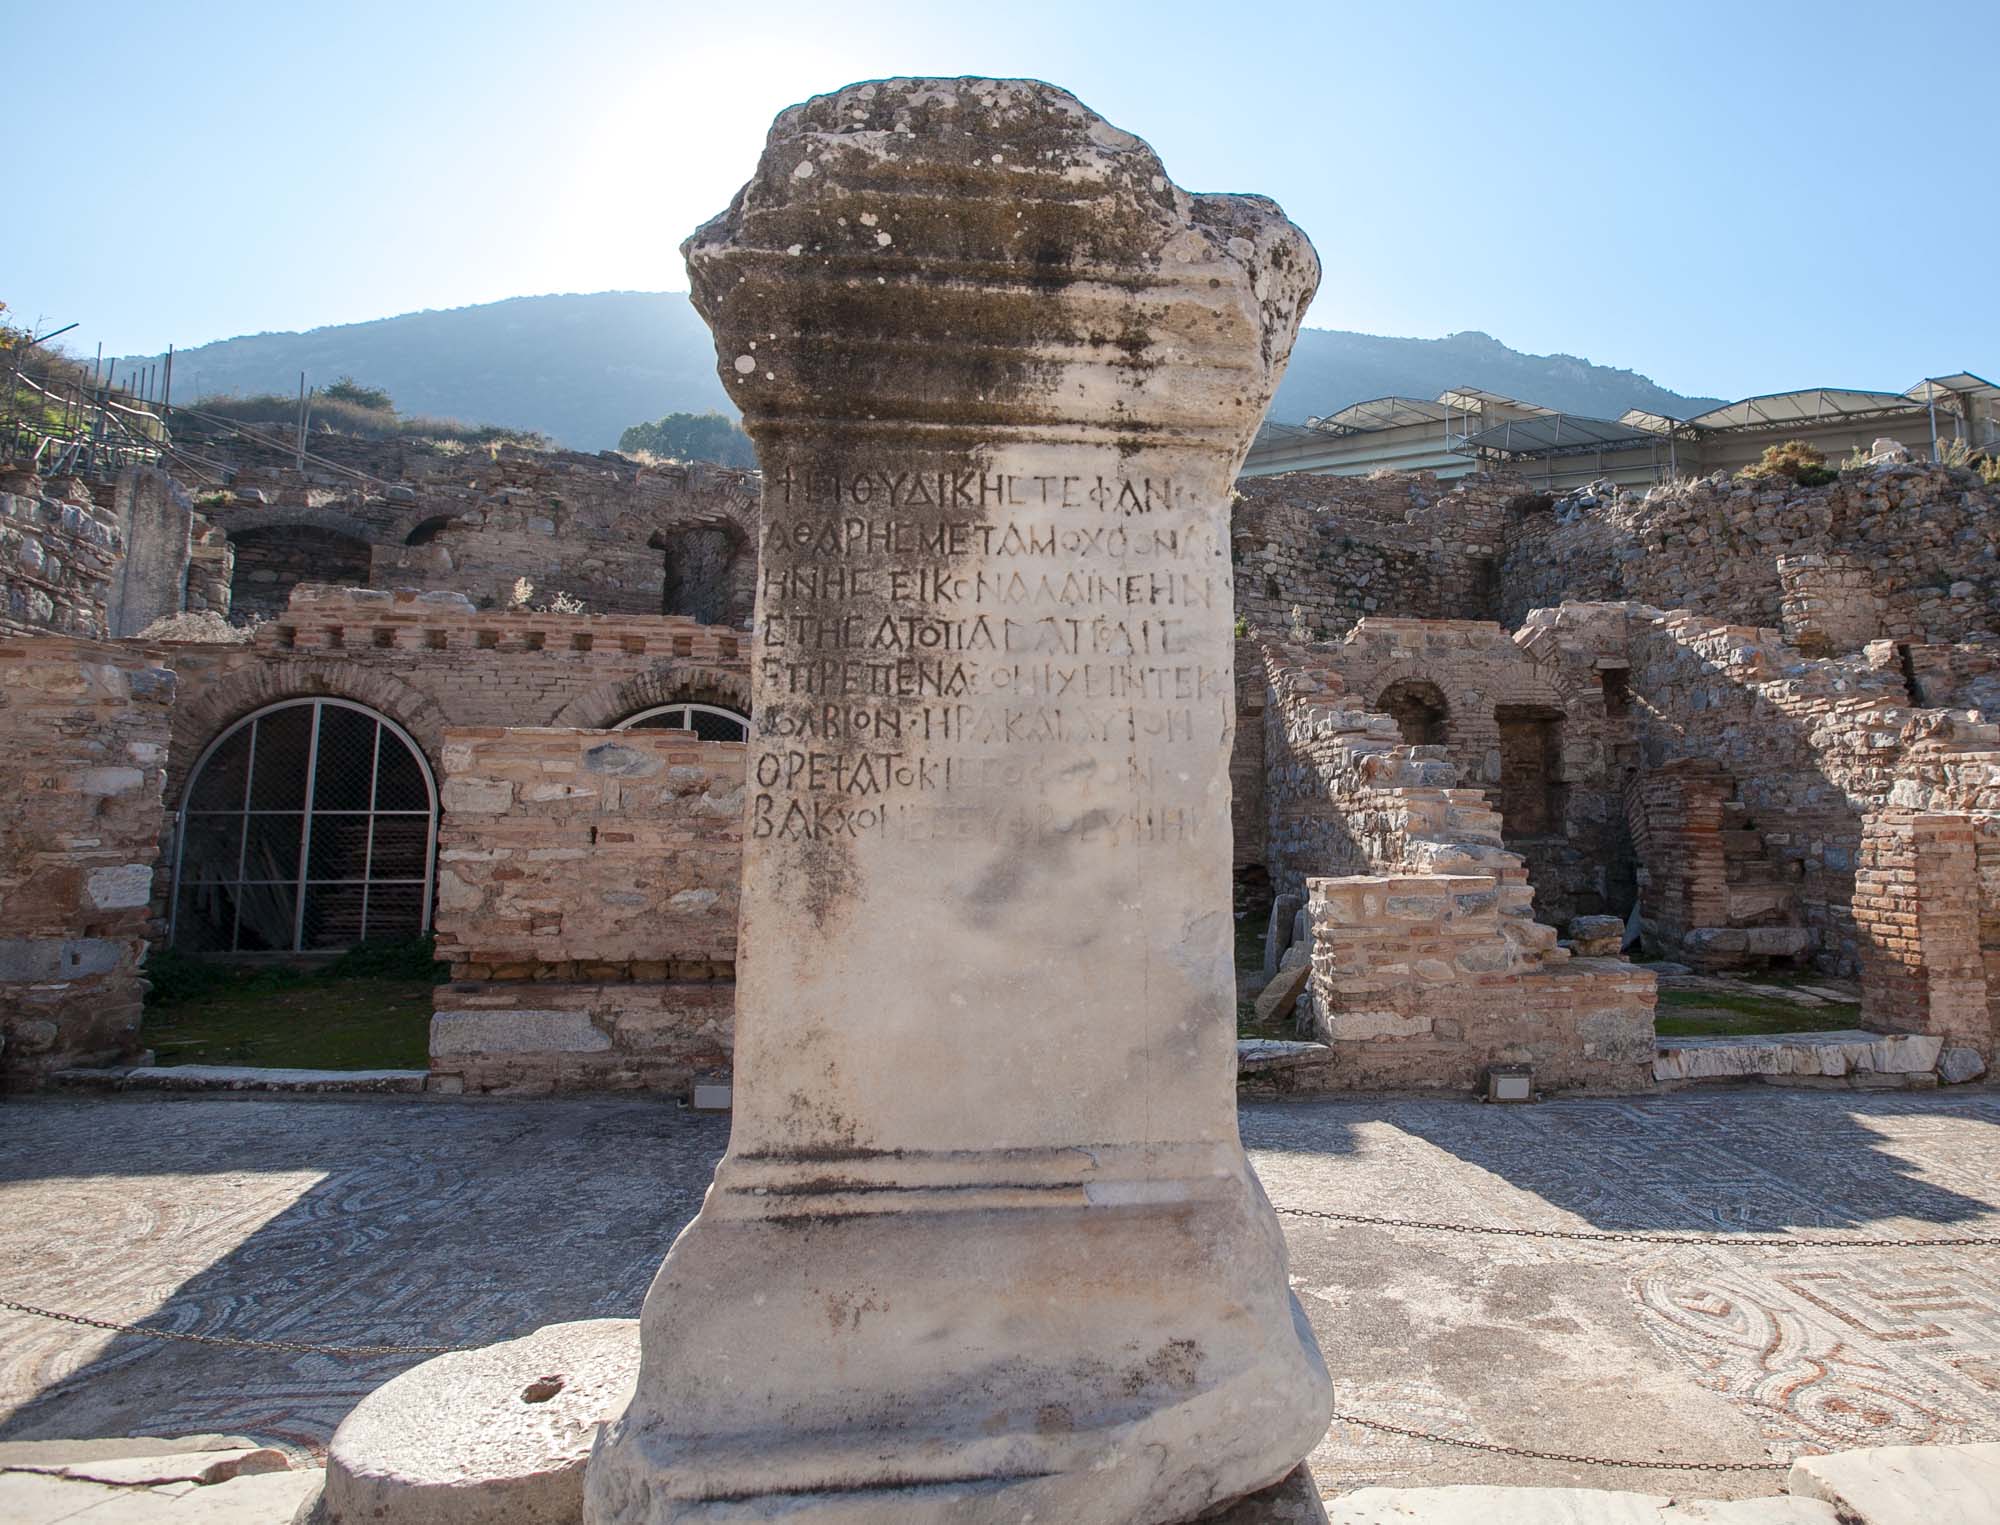 Ephesus inscription